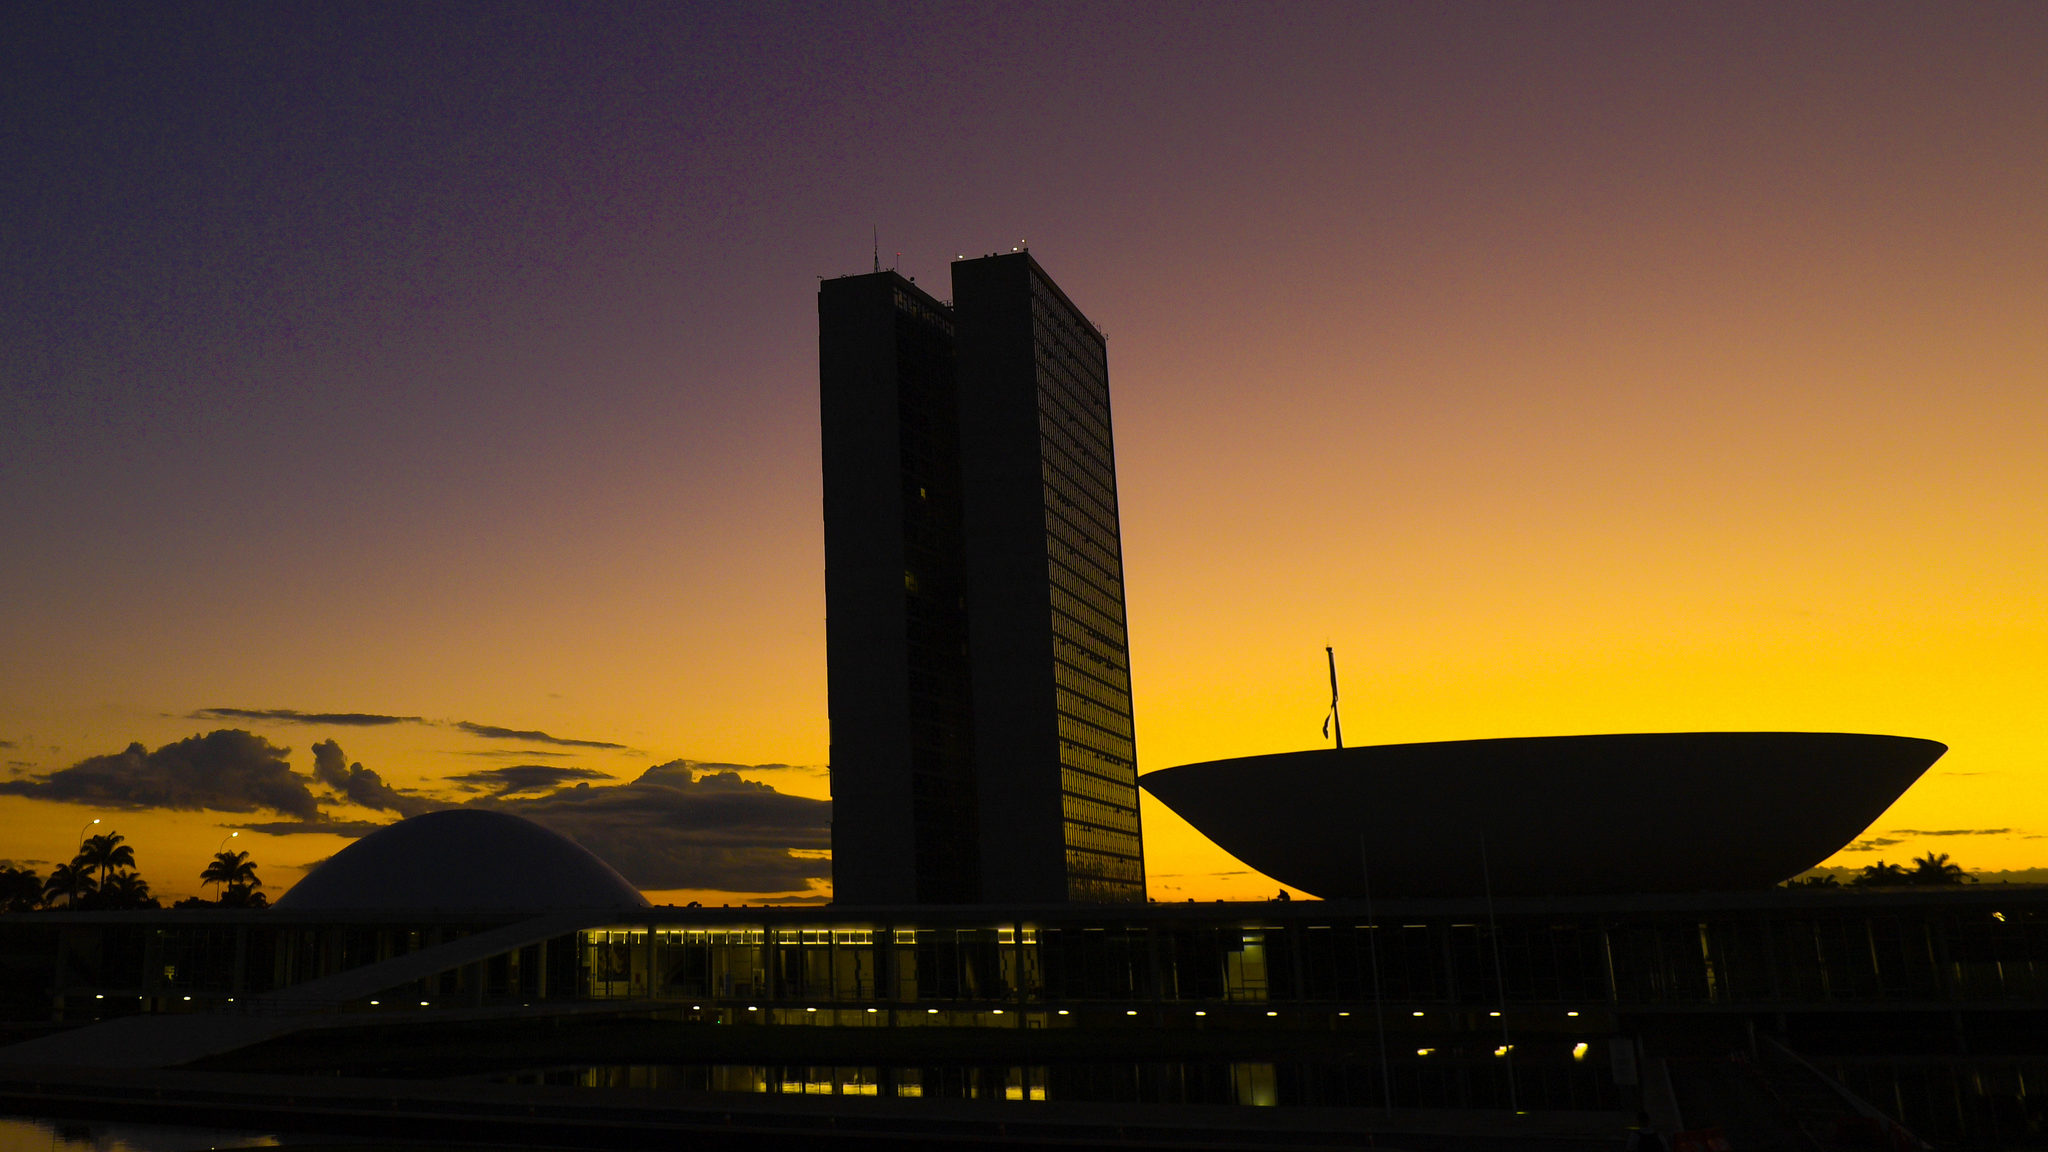 Imposto de combustíveis volta para as mãos do Congresso. Na imagem: Fachada do Congresso Nacional, em Brasília, durante o amanhecer (Foto: Pedro França/Agência Senado)